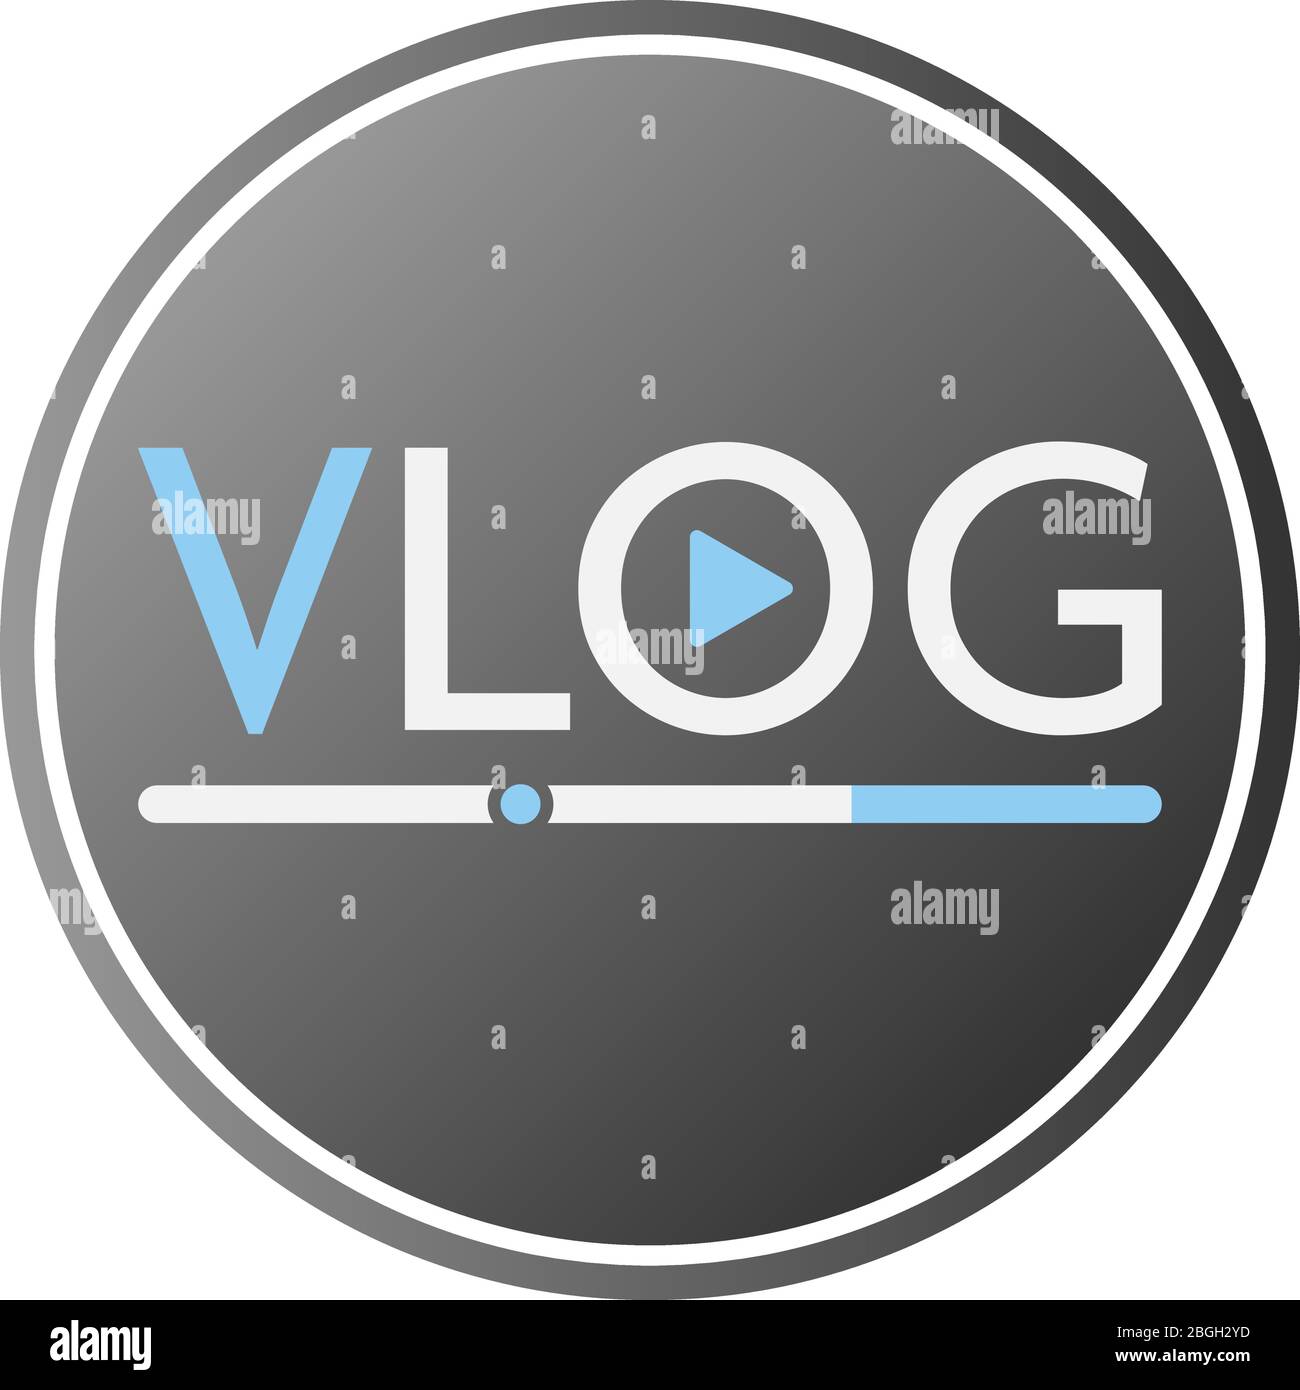 icona o simbolo vlog piatto rotondo con illustrazione vettoriale del pulsante di riproduzione Illustrazione Vettoriale